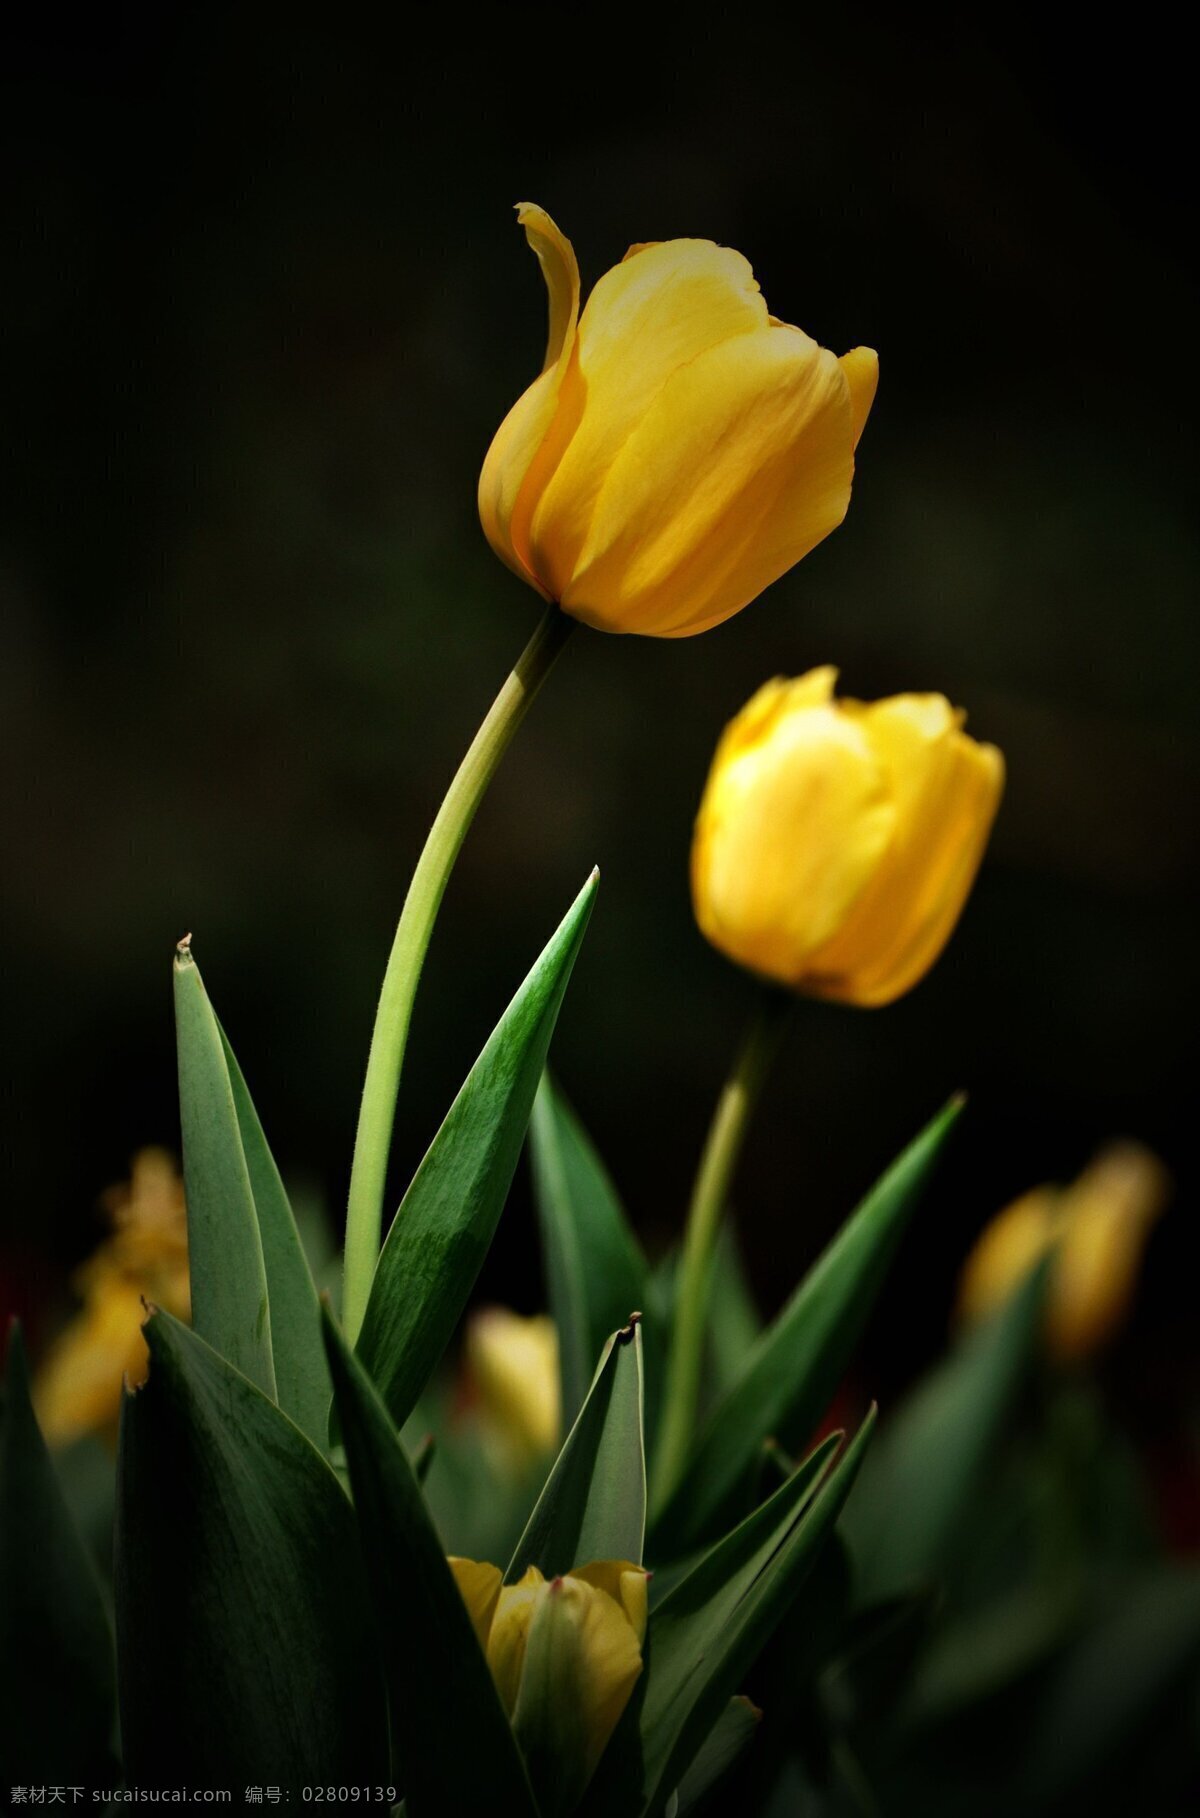 唯美 黄色 郁金香 高清 黄花 植物 鲜花 鲜艳